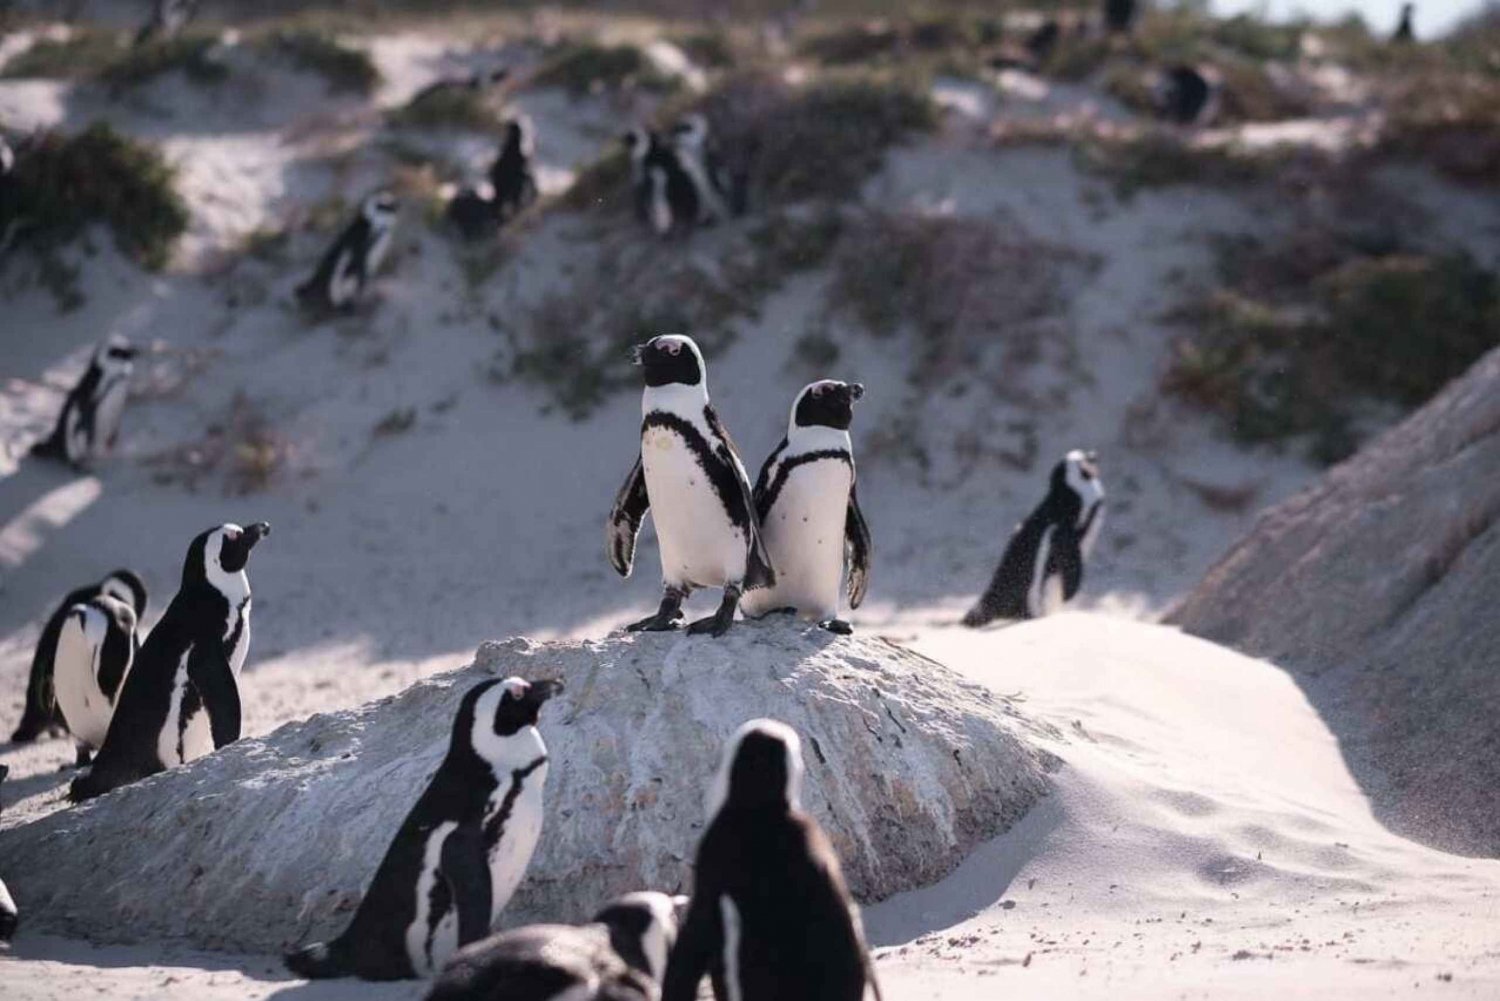 Excursão privativa de dia inteiro a Cape Point, pinguins e Table Mountain